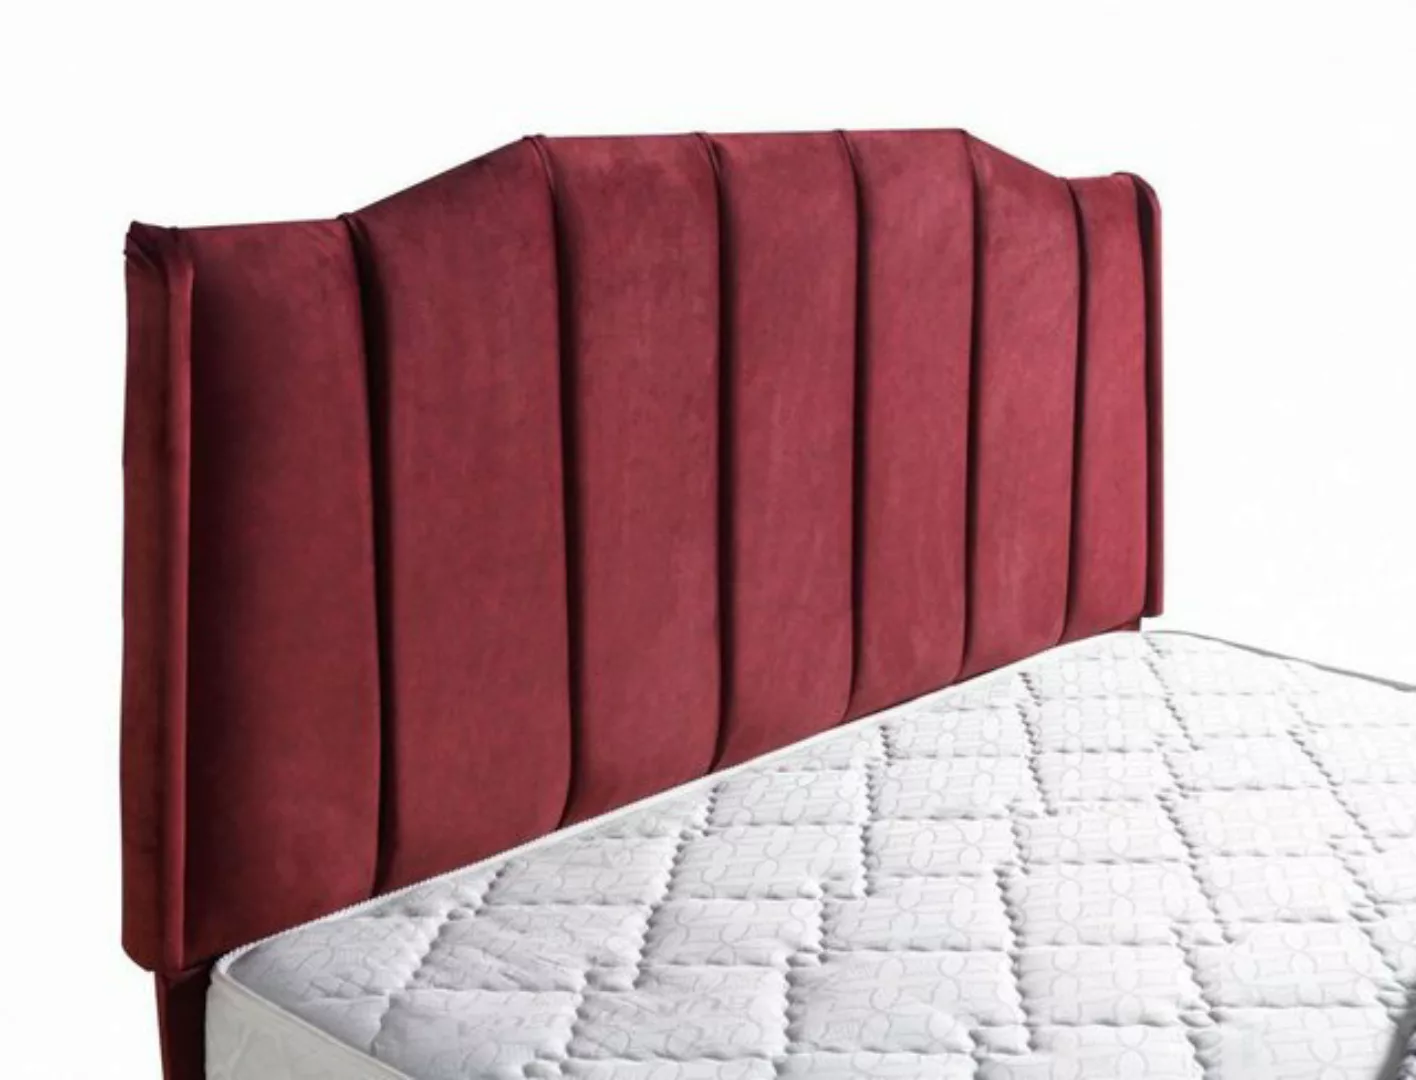 JVmoebel Bett Bett Design Betten Luxus Betten Polster Schlafzimmer Möbel Ne günstig online kaufen